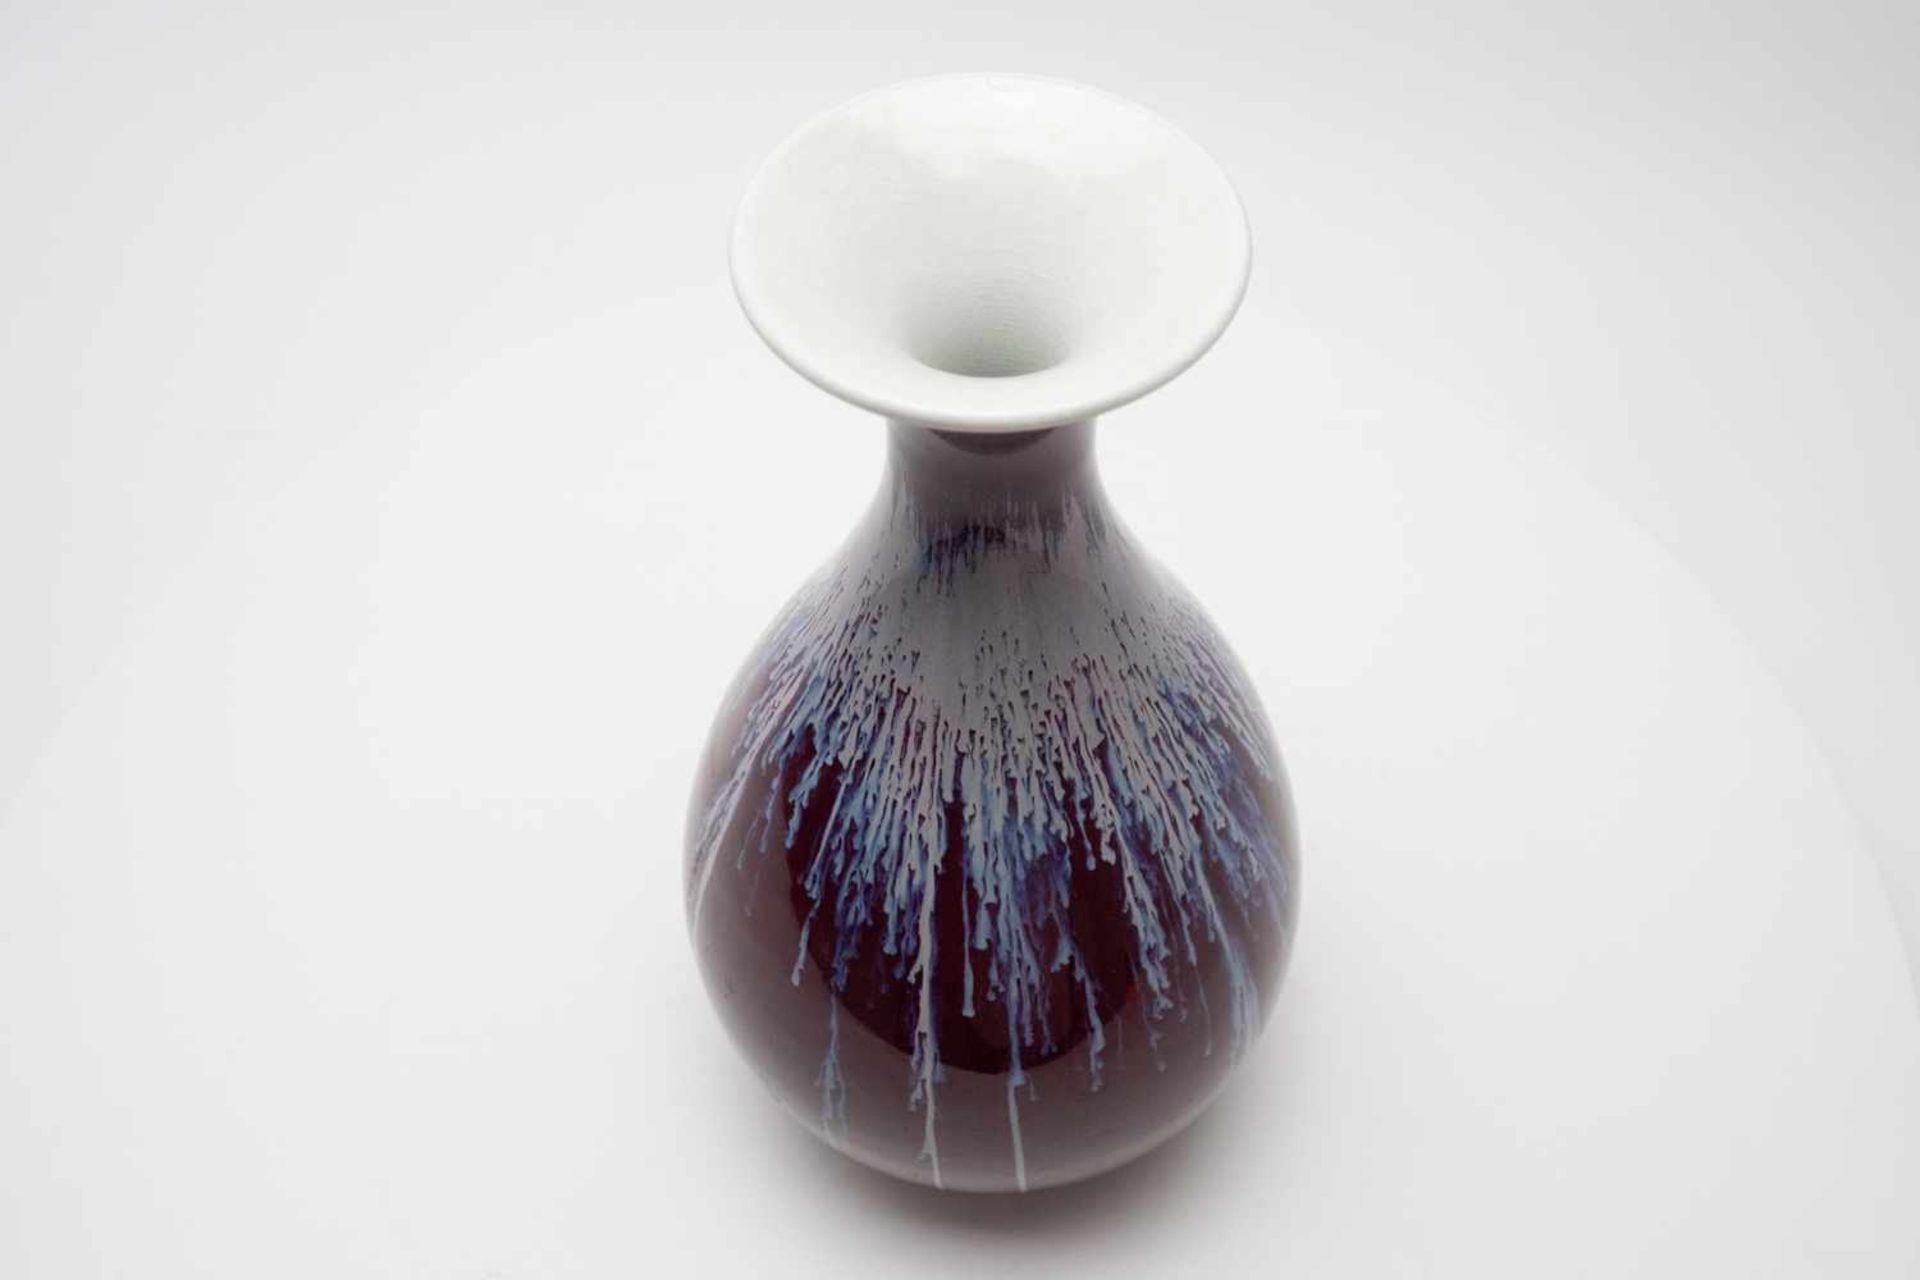 Vase China - Image 3 of 4